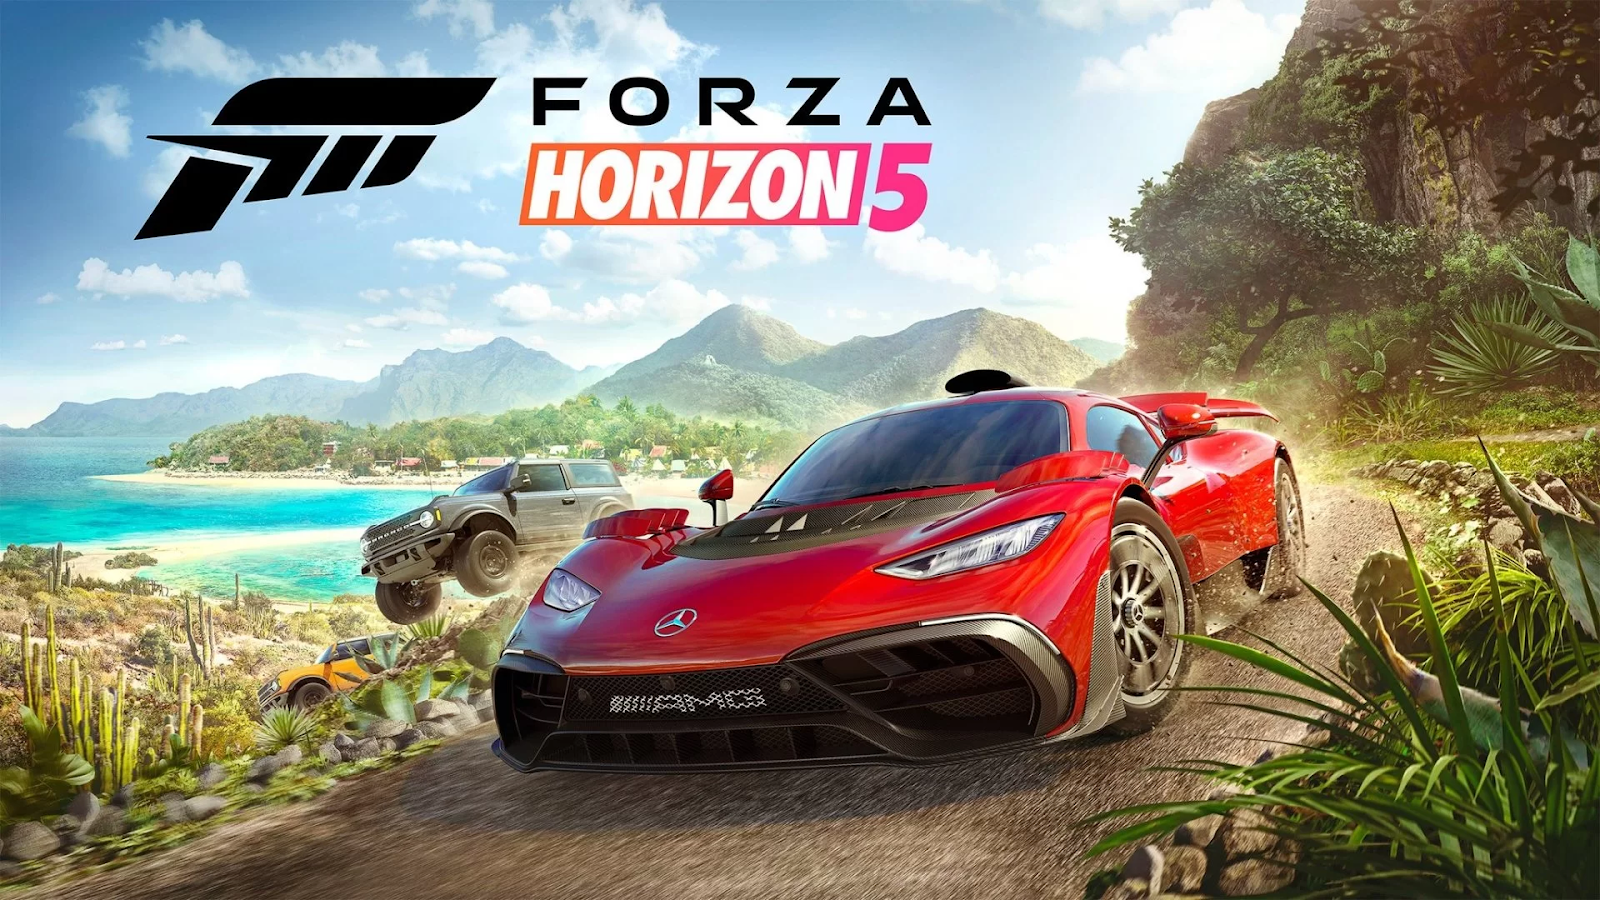 1. Forza Horizon 5